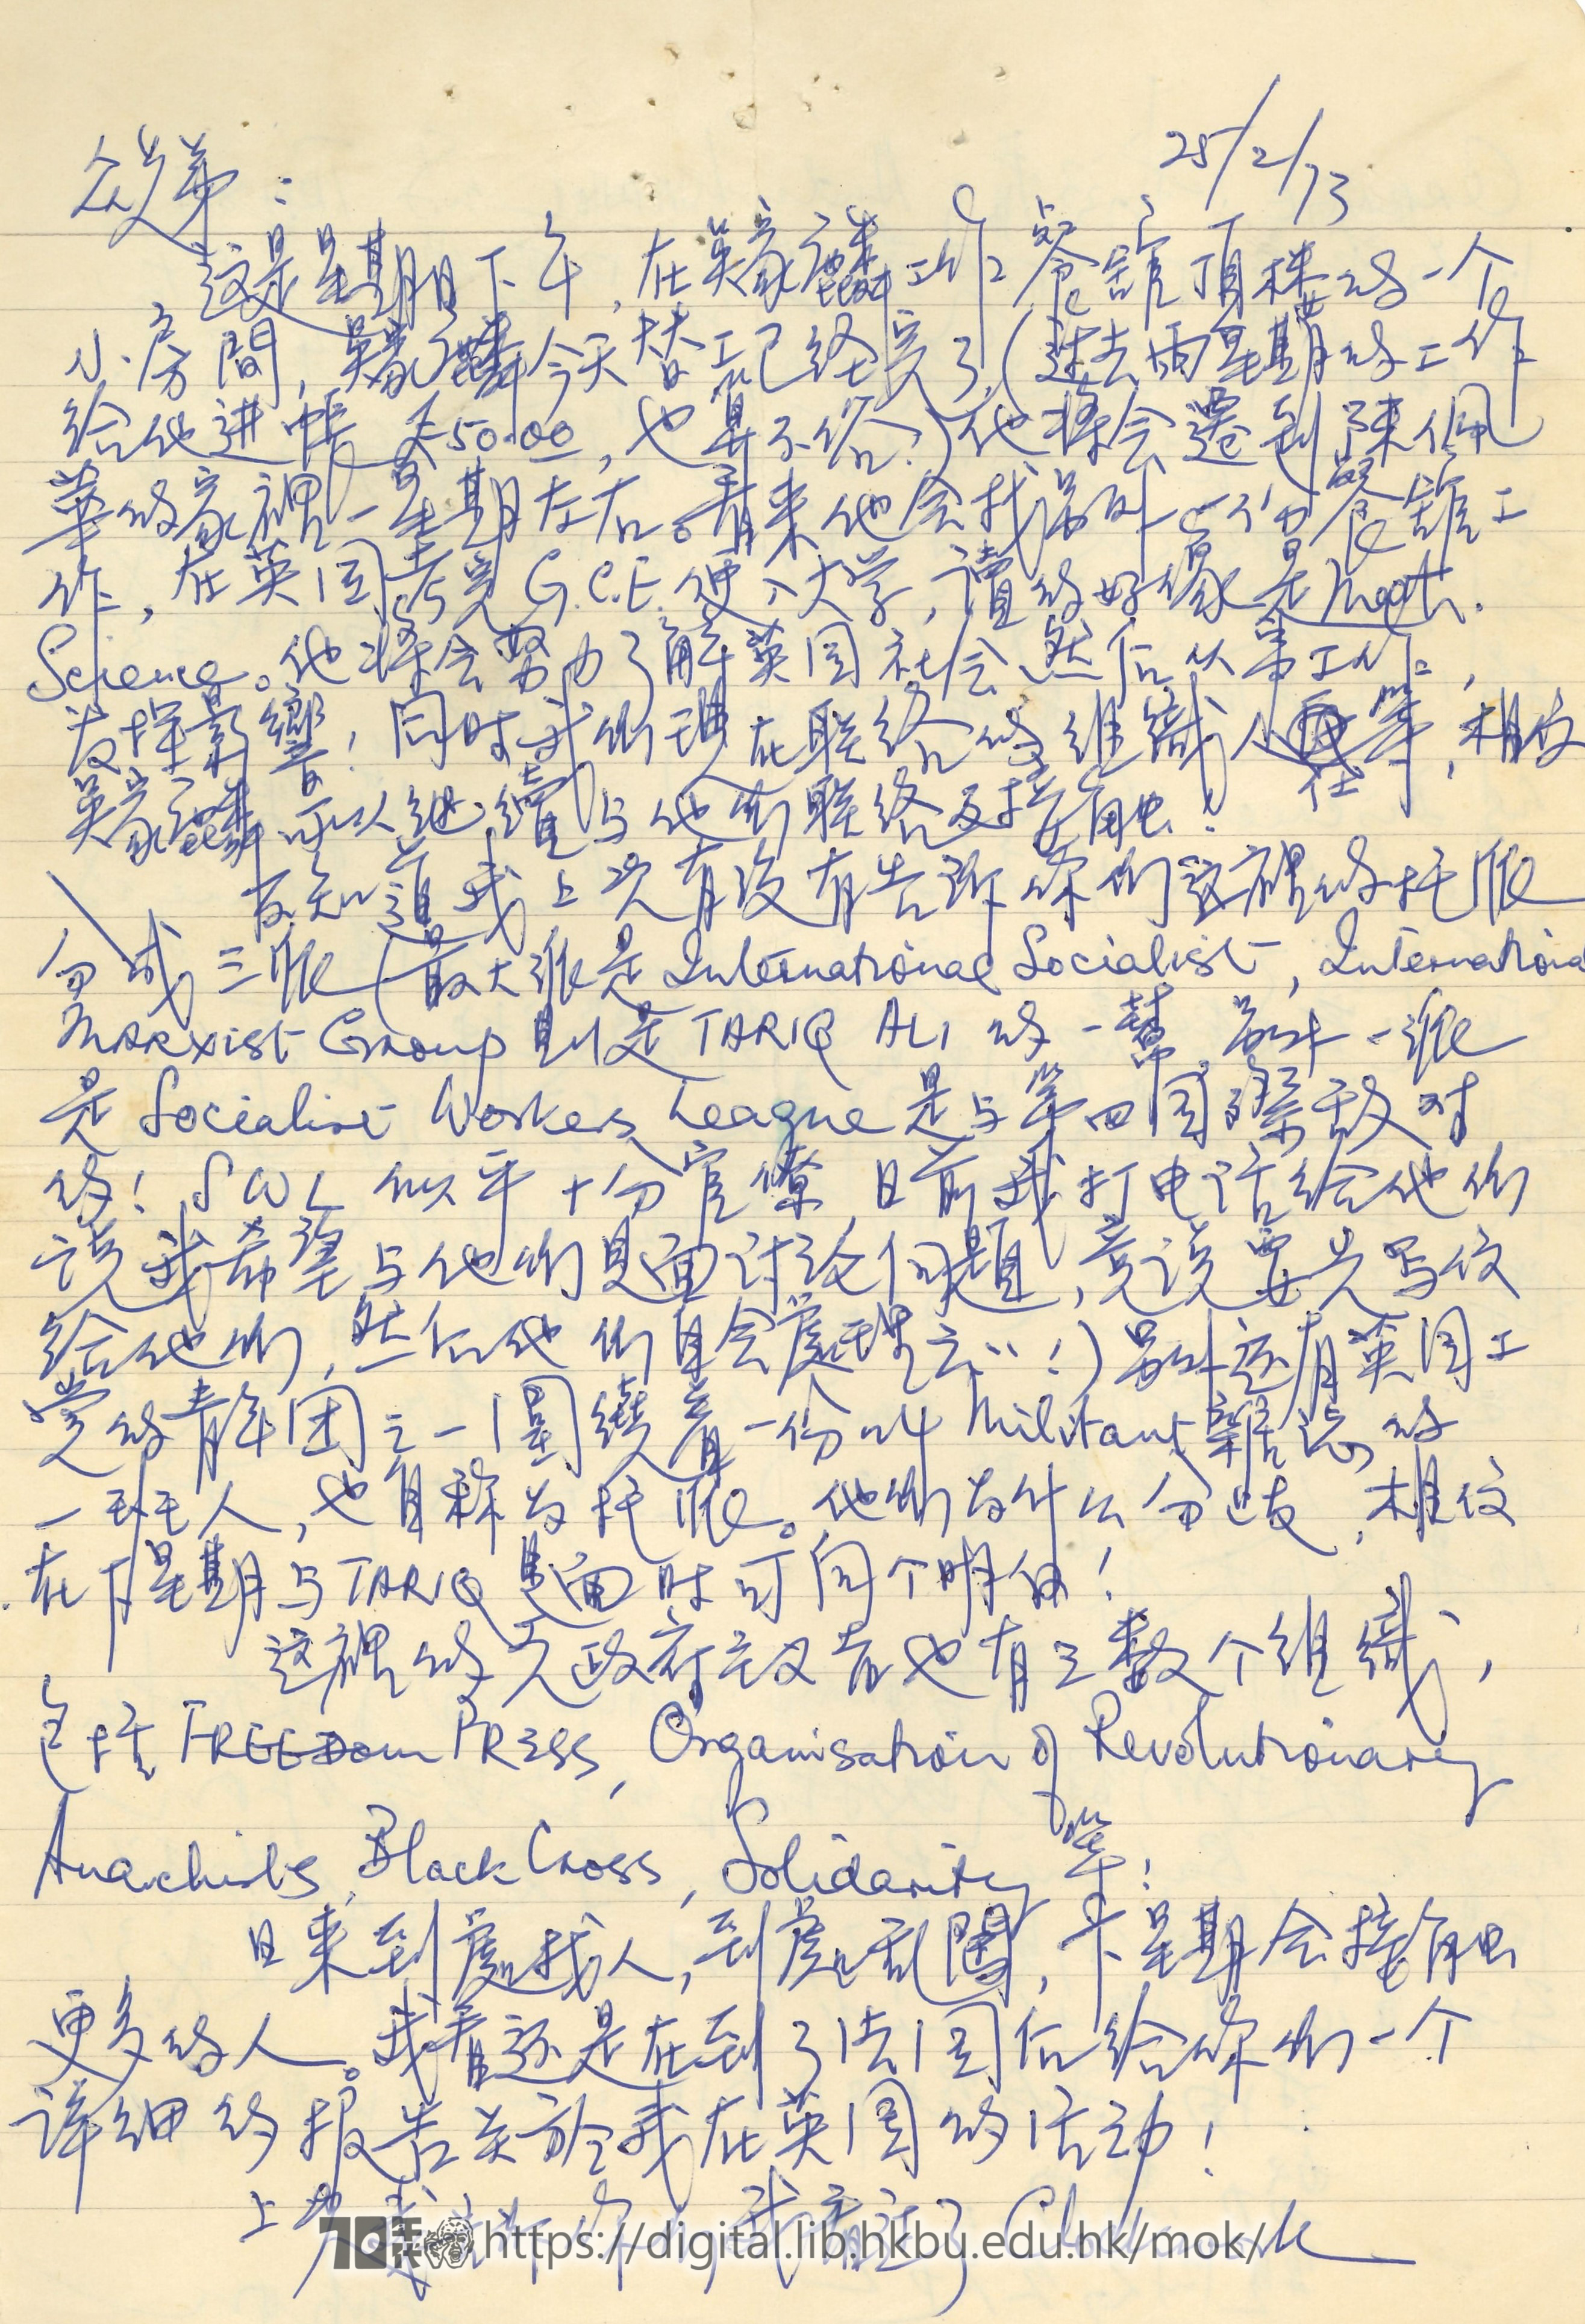   Letter from Mok Chiu Yu MOK, Chiu Yu 